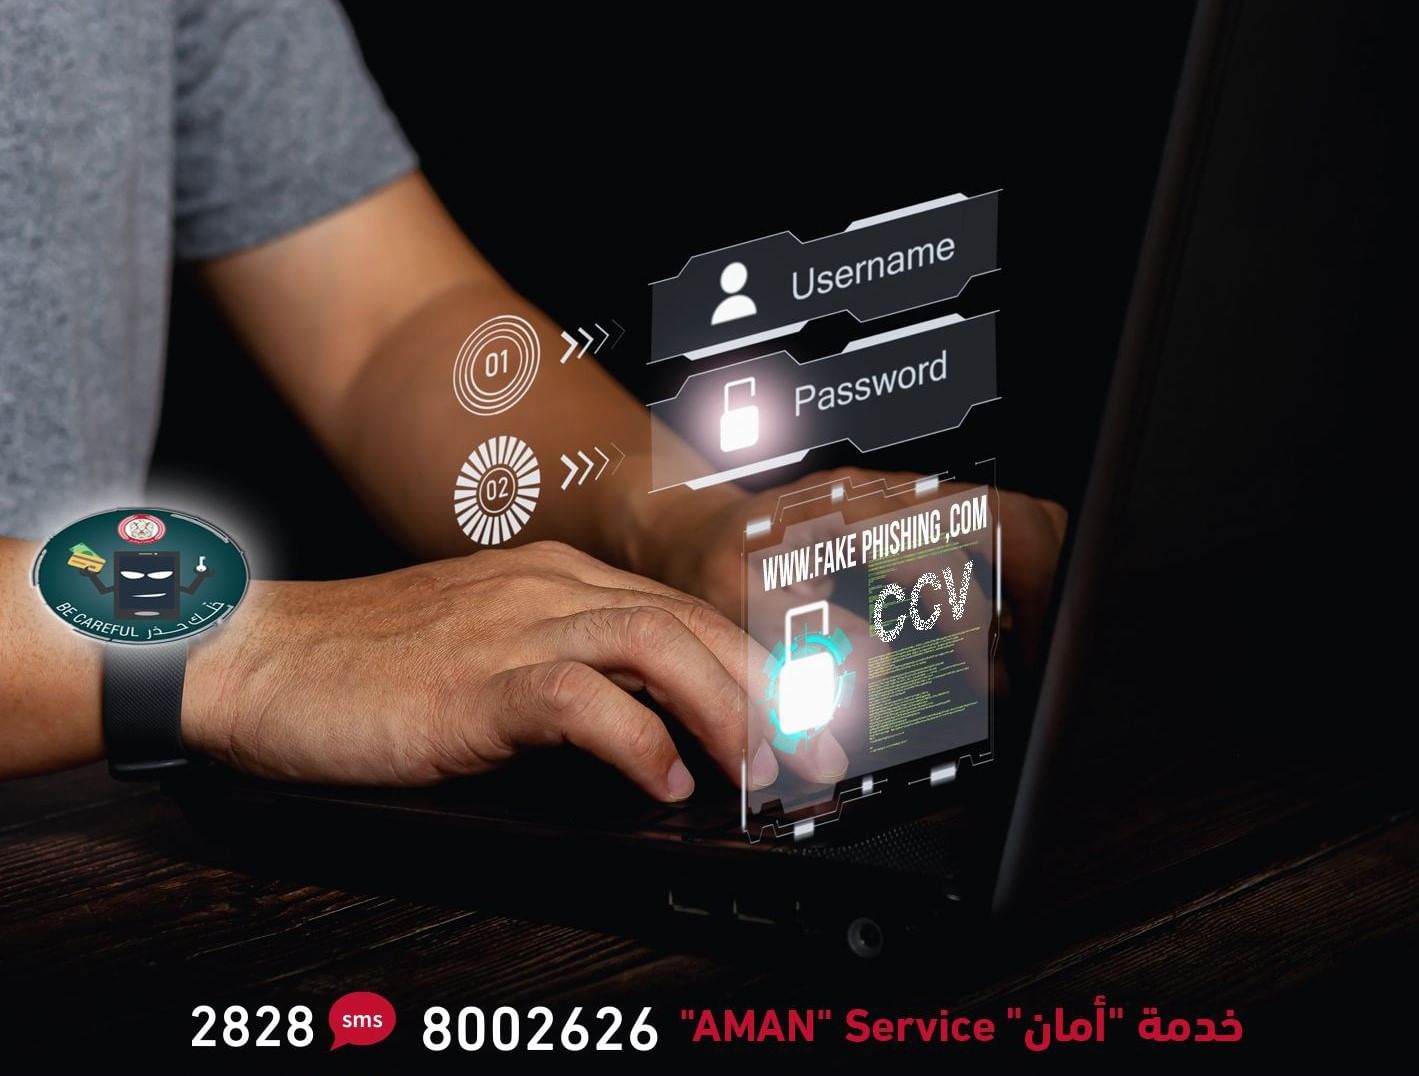 شرطة أبوظبي تحذر من روابط لمواقع نصب إلكترونية يتم تداولها عبر وسائل التواصل